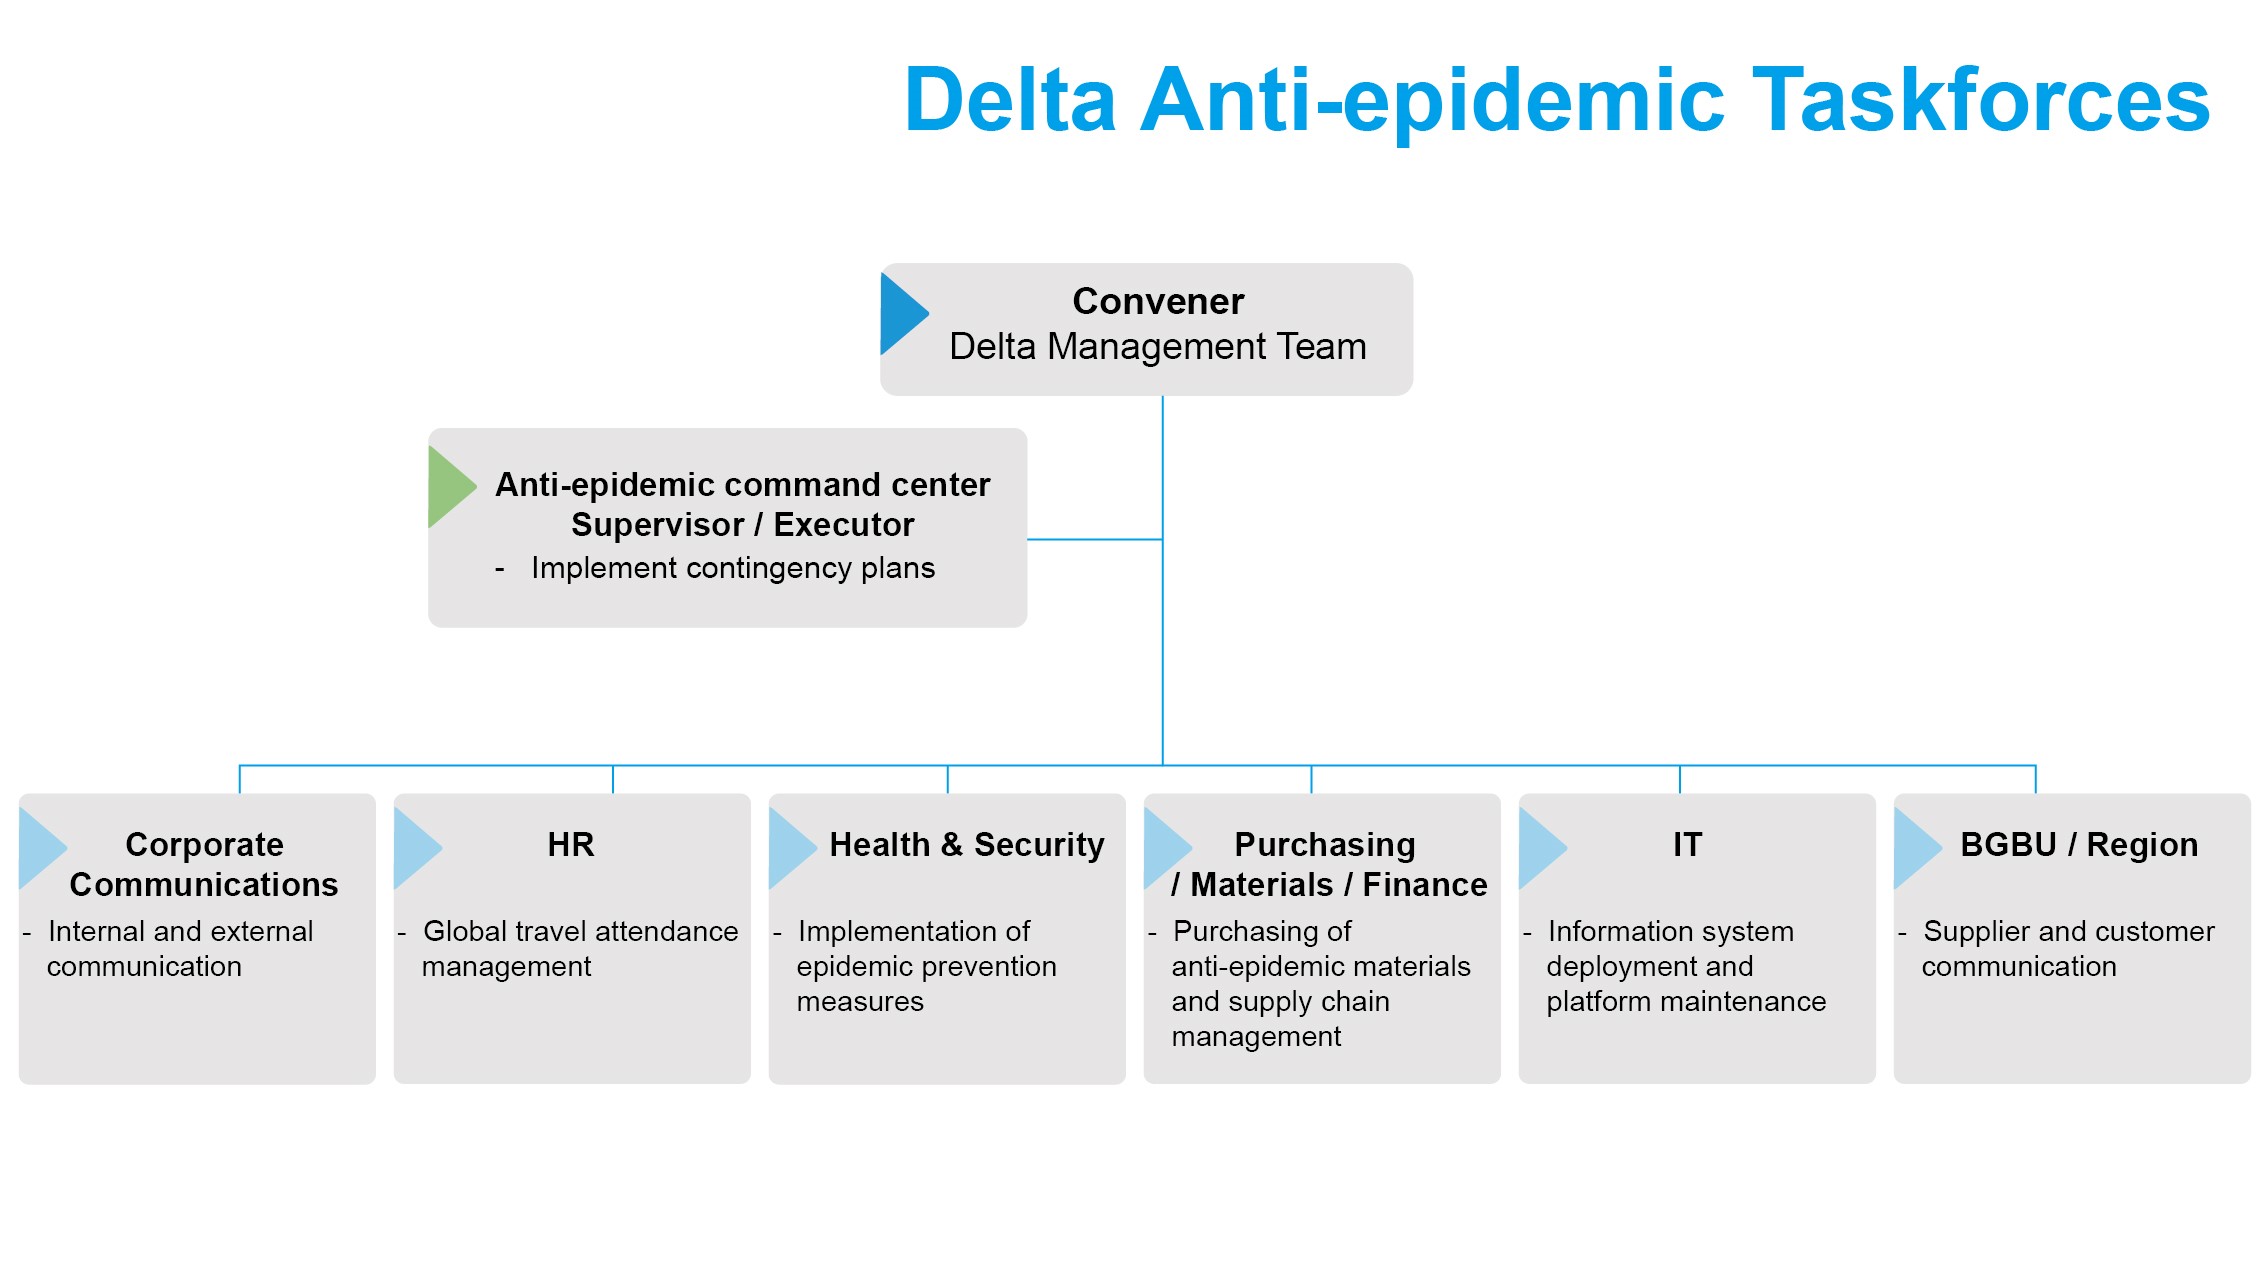 delta Anti-epidemic taskforce